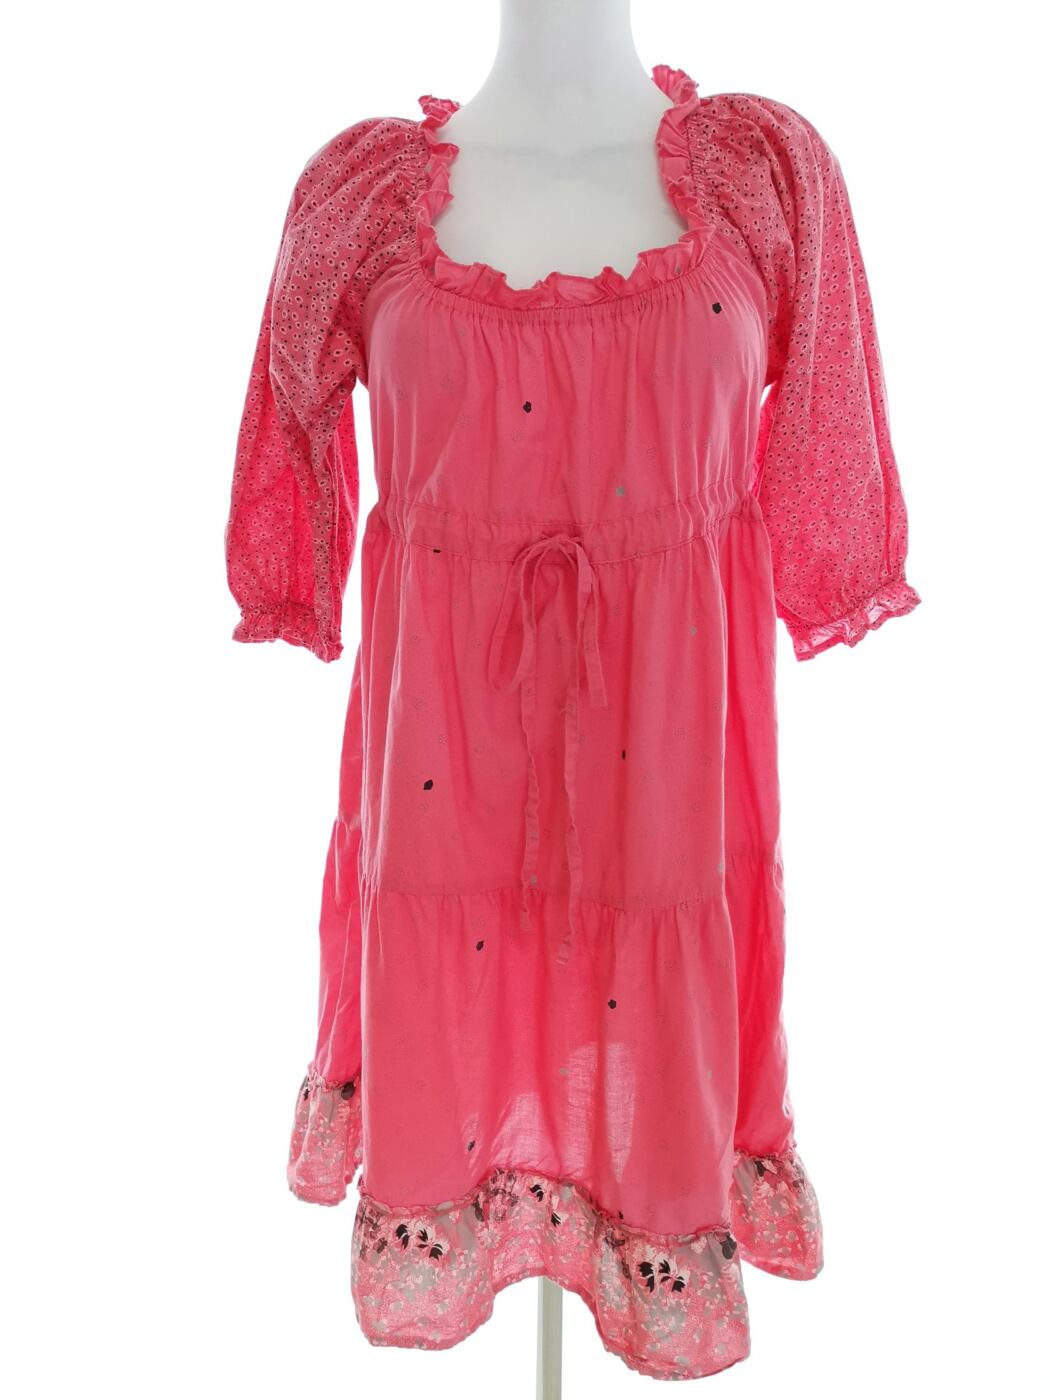 Vero moda Rozmiar S Kolor Różowy Dekolt U Sukienka Sheath Rękaw 3/4 Do Kolan Materiał Bawełna 100%